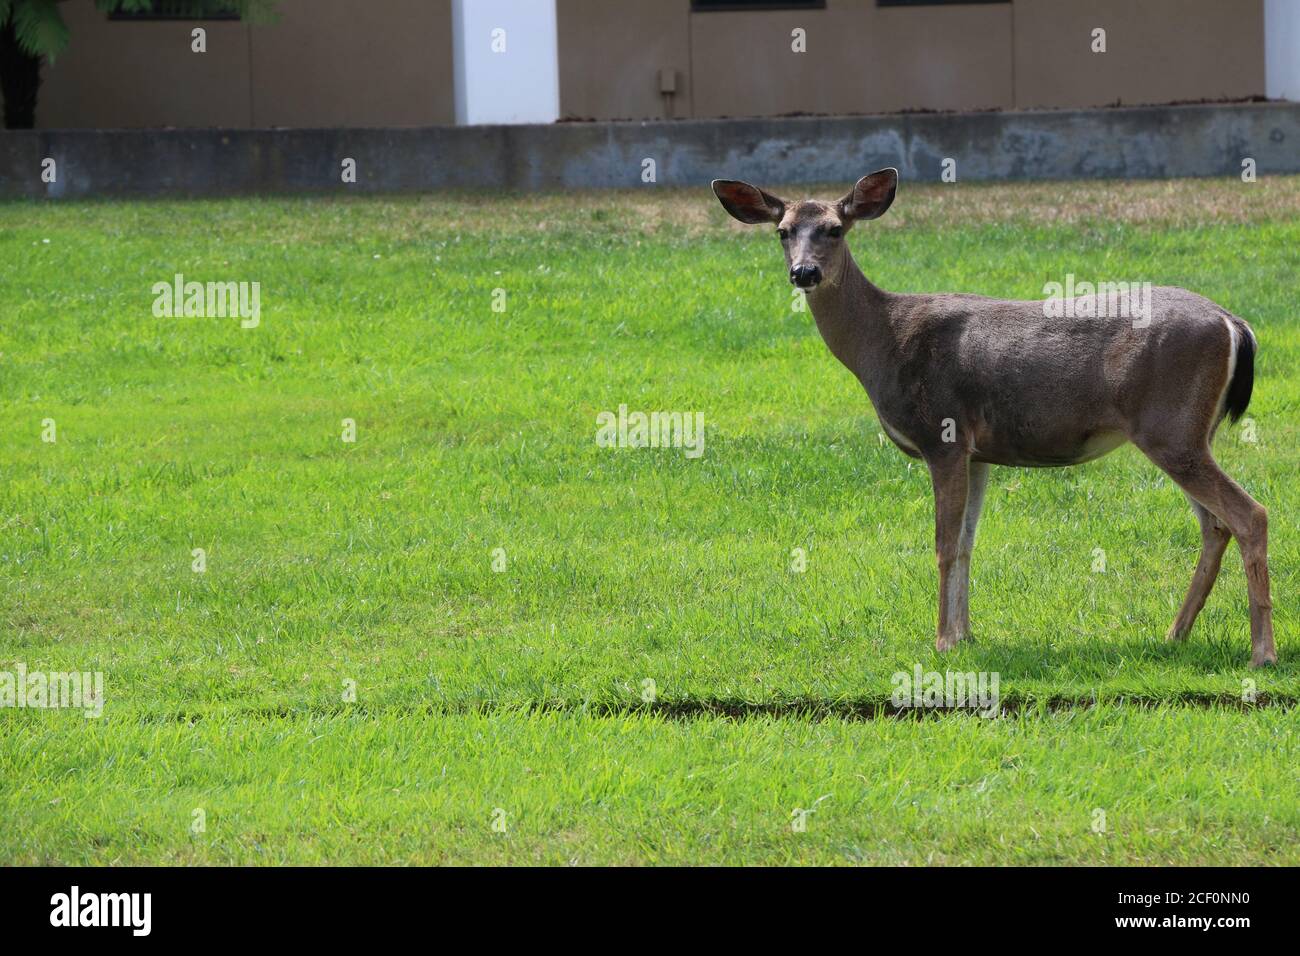 Un cervo femmina marrone delicato con orecchie grandi e morbide si erge in una posa curiosa e vigile sull'erba verde. Foto Stock